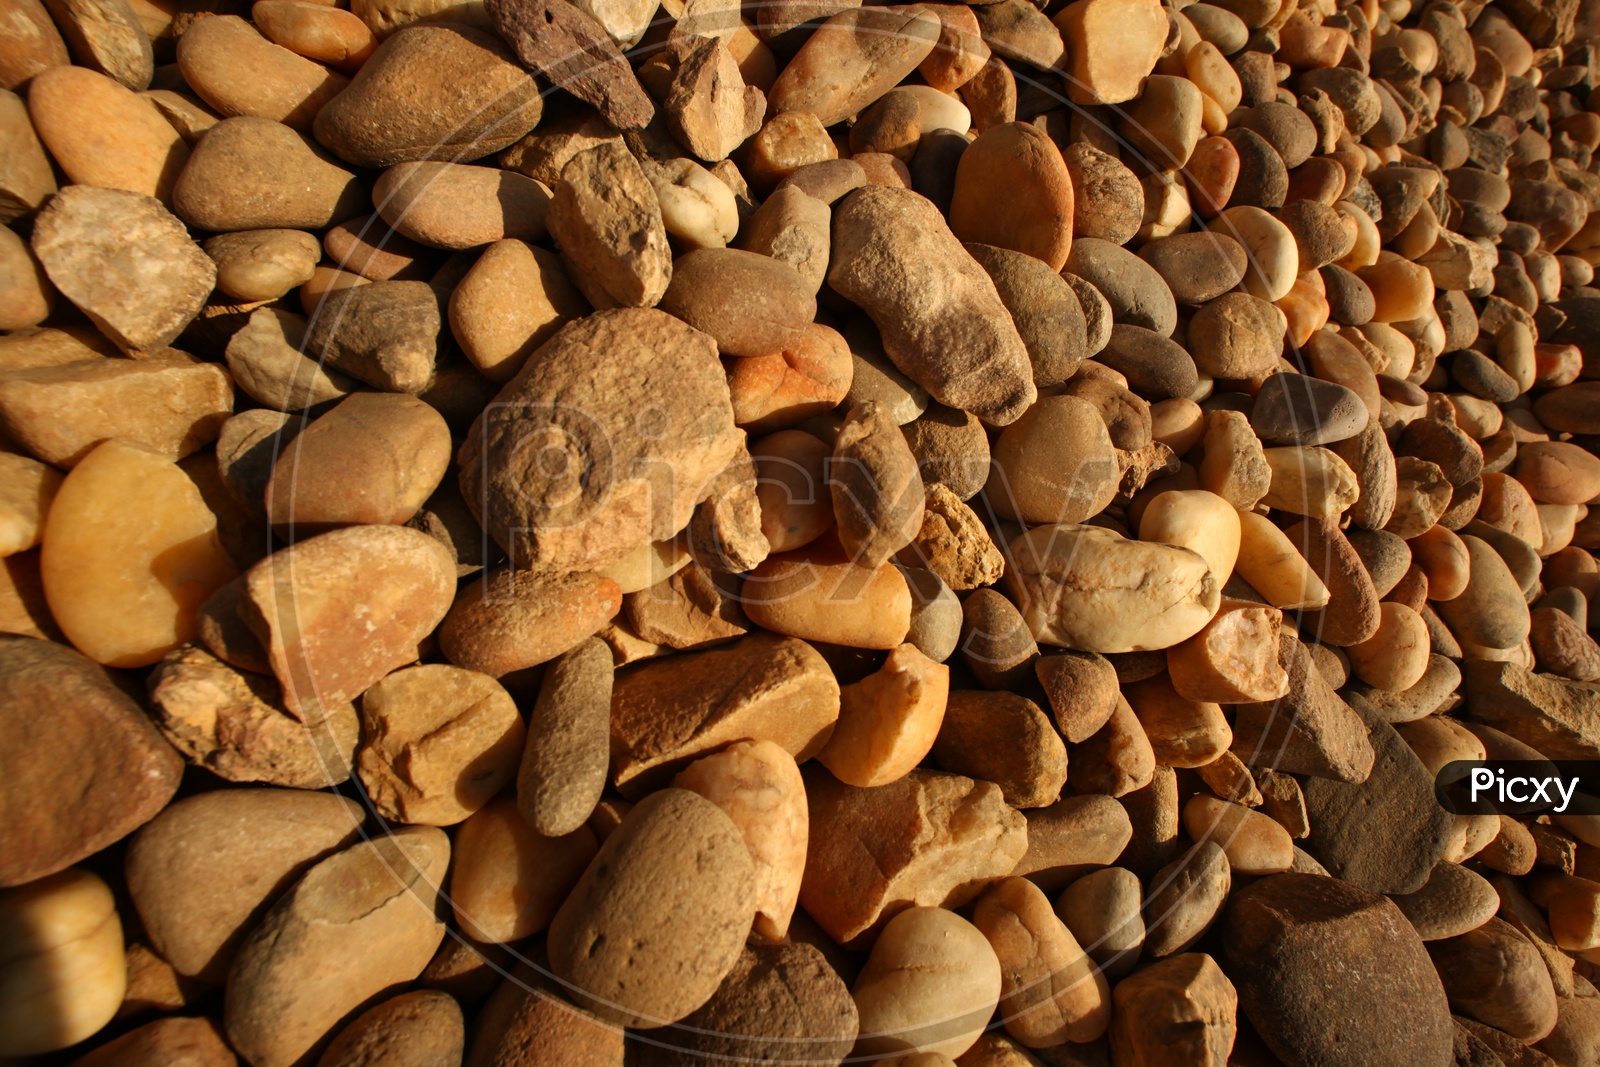 Cobble stones